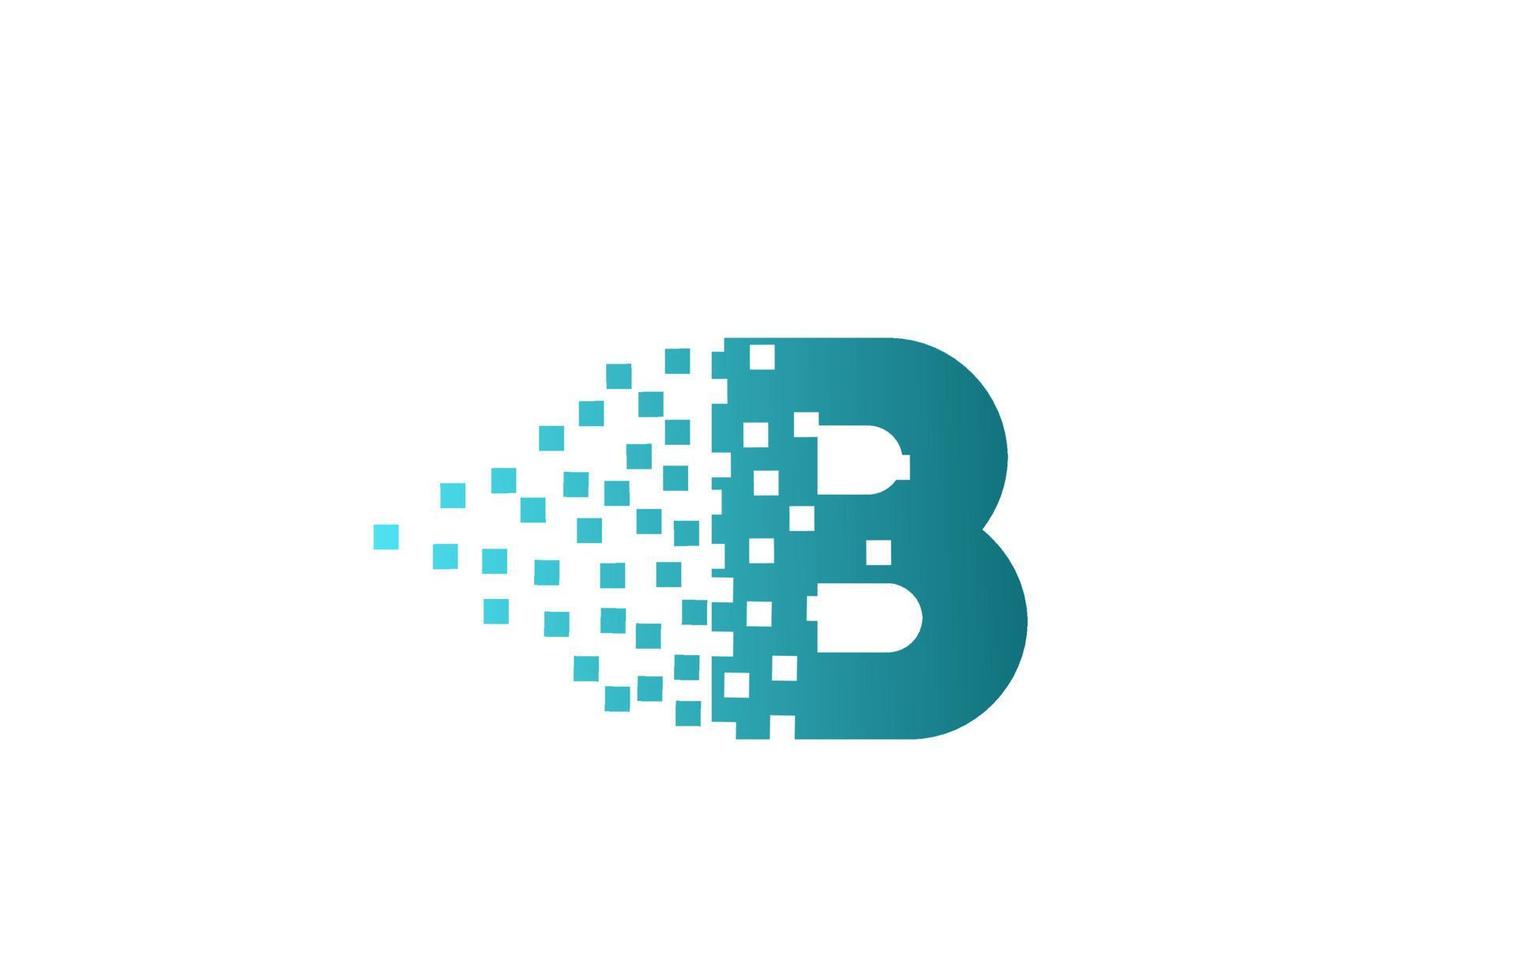 b Alphabet Buchstaben-Logo-Symbol für Unternehmen und Unternehmen. Grün erodiertes Pixeldesign für Corporate Identity vektor